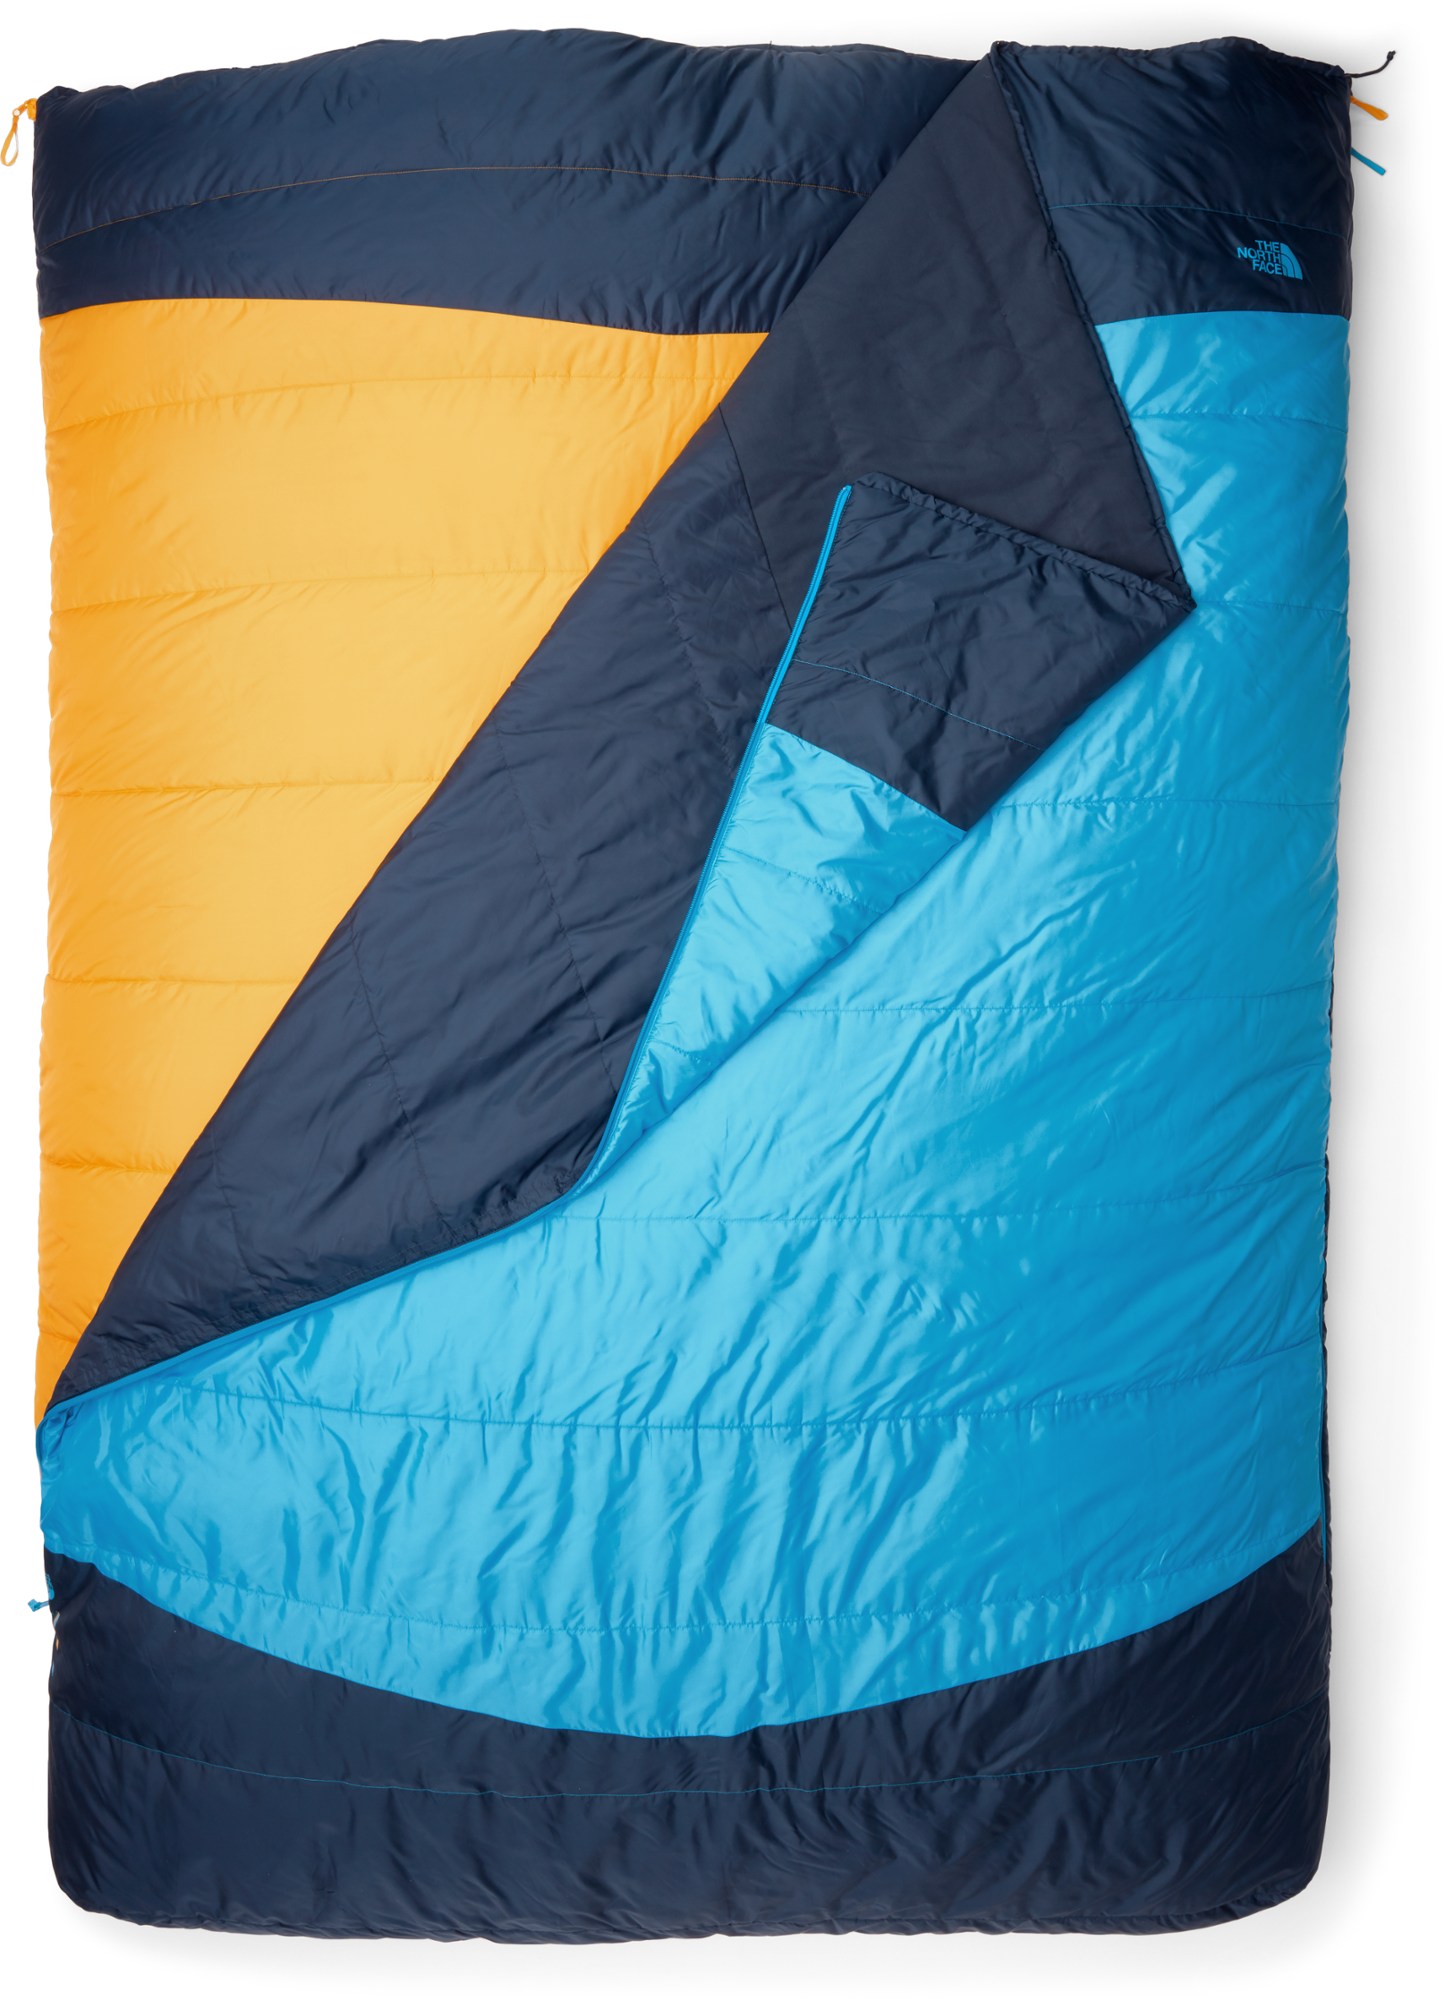 TNF sleeping bag